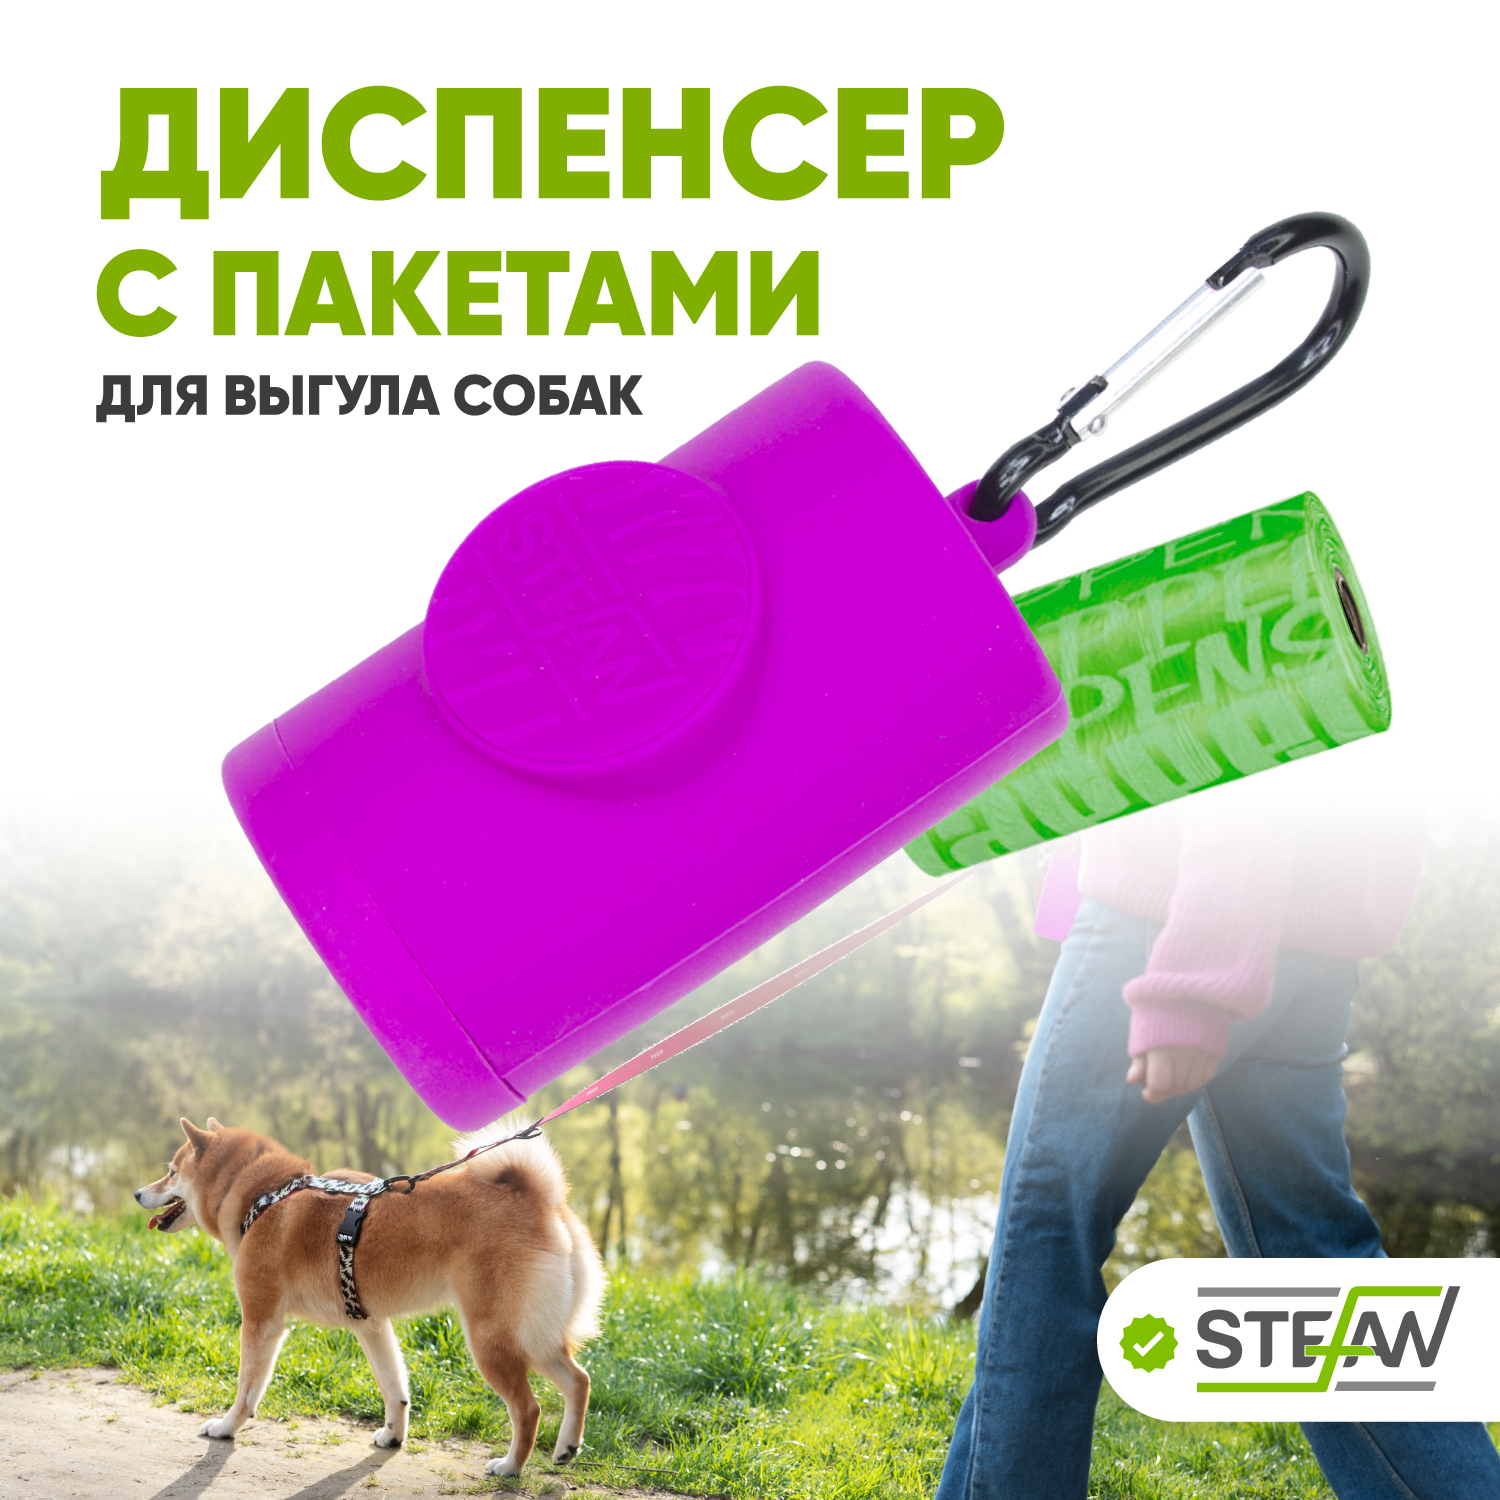 Контейнер для гигиенических пакетов STEFAN, фиолетовый